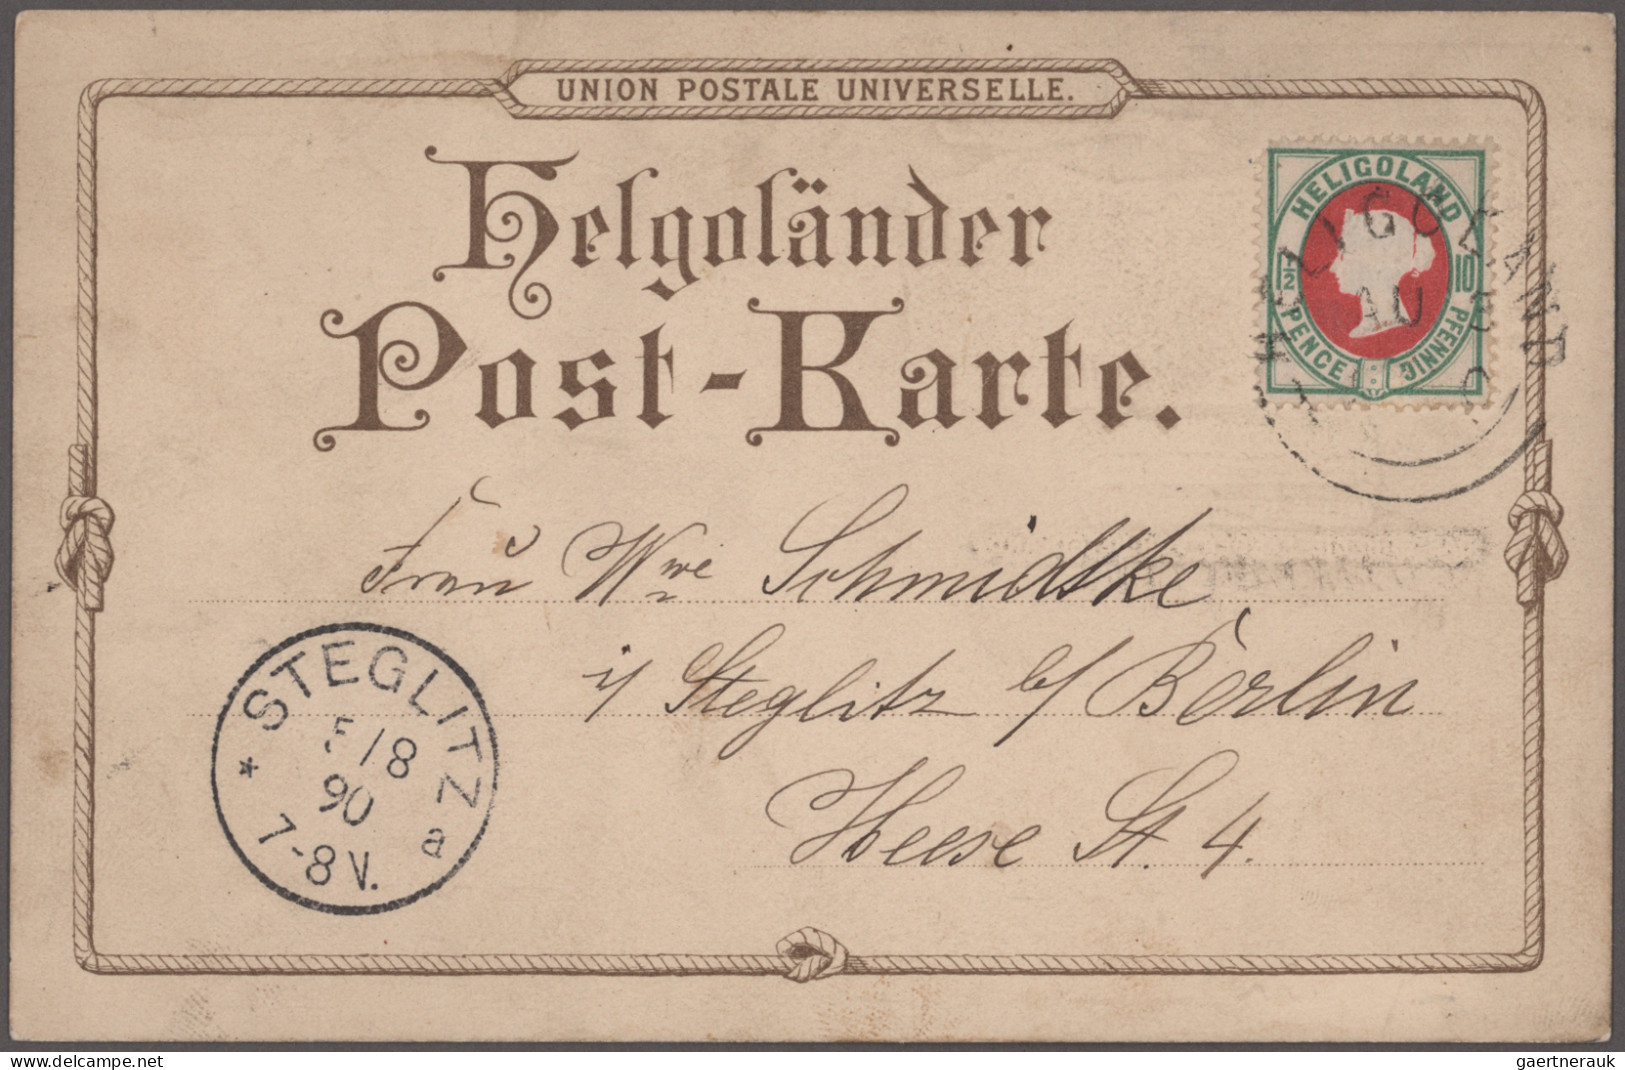 Helgoland - Marken und Briefe: 1860er-1950er Jahre: Kollektion von mehreren hund